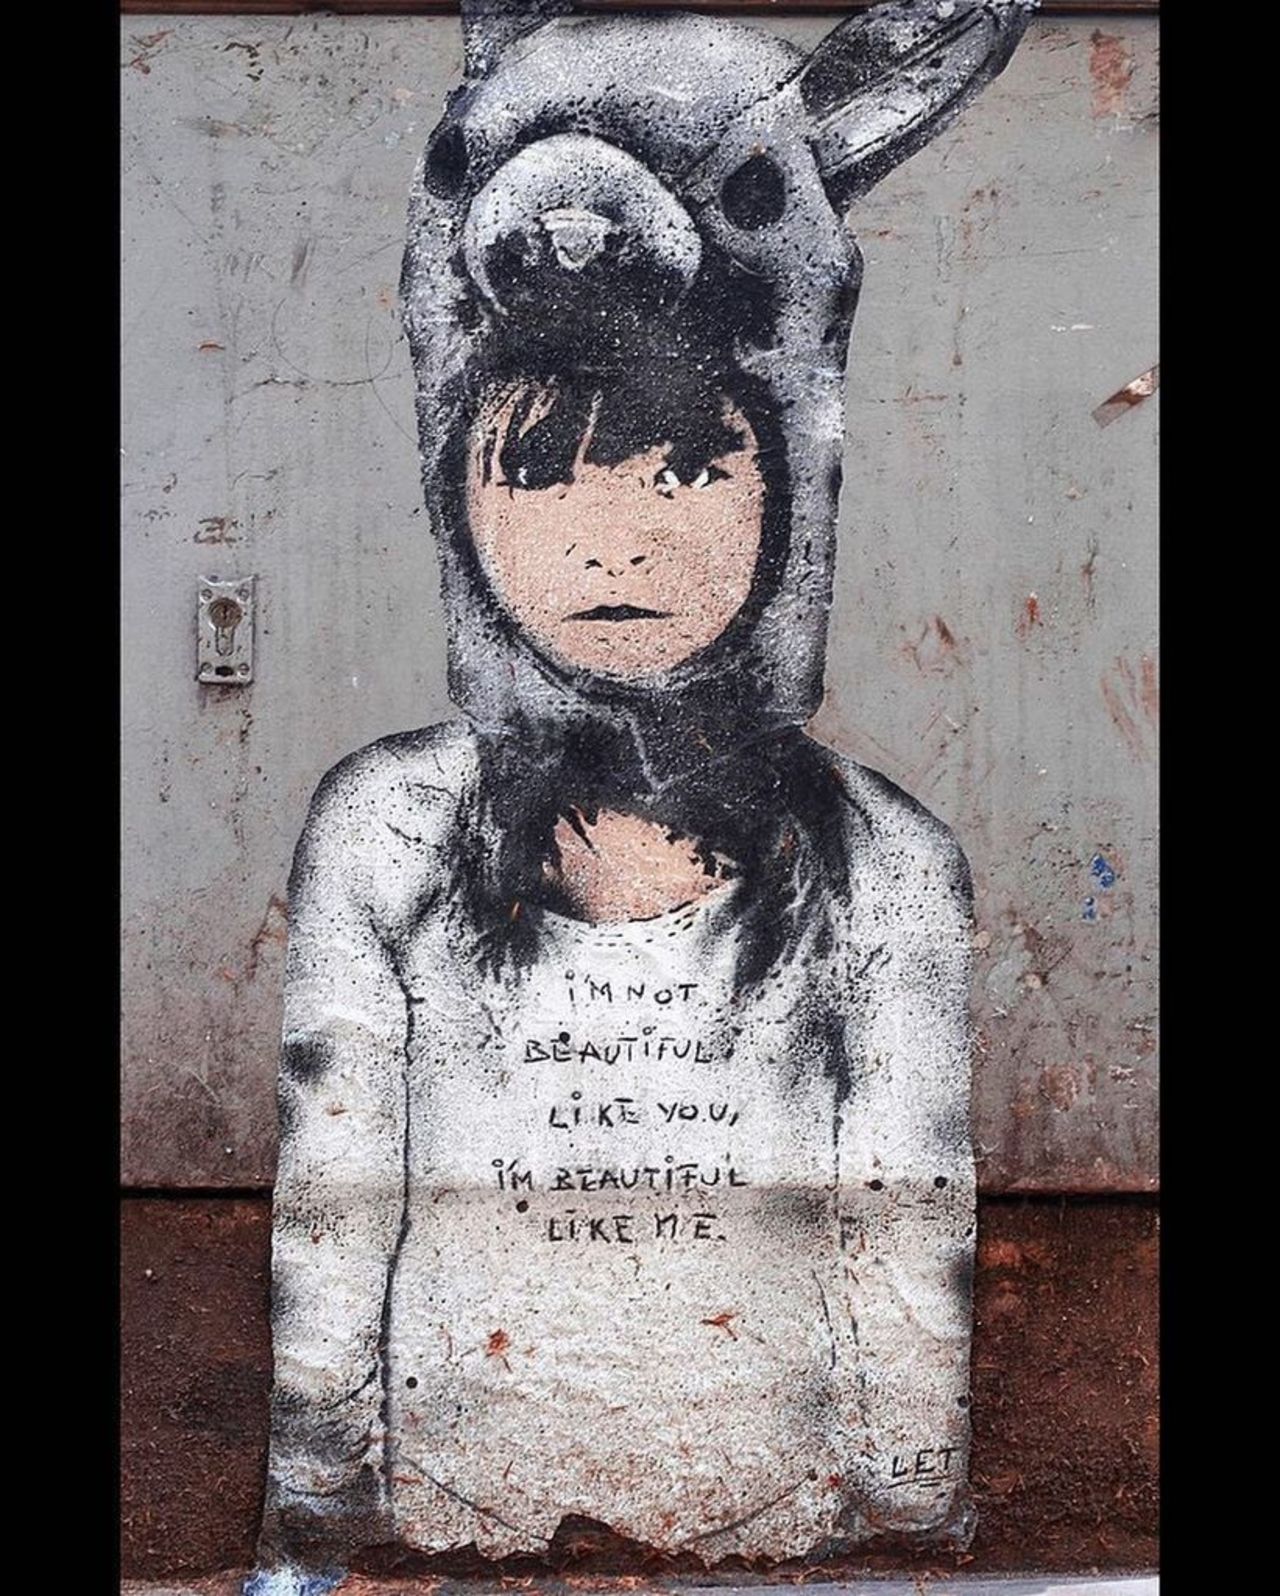 Dope piece by Les Enfants Teribles Germany#streetart #graffiti #mural #art https://t.co/XwvOefEg42